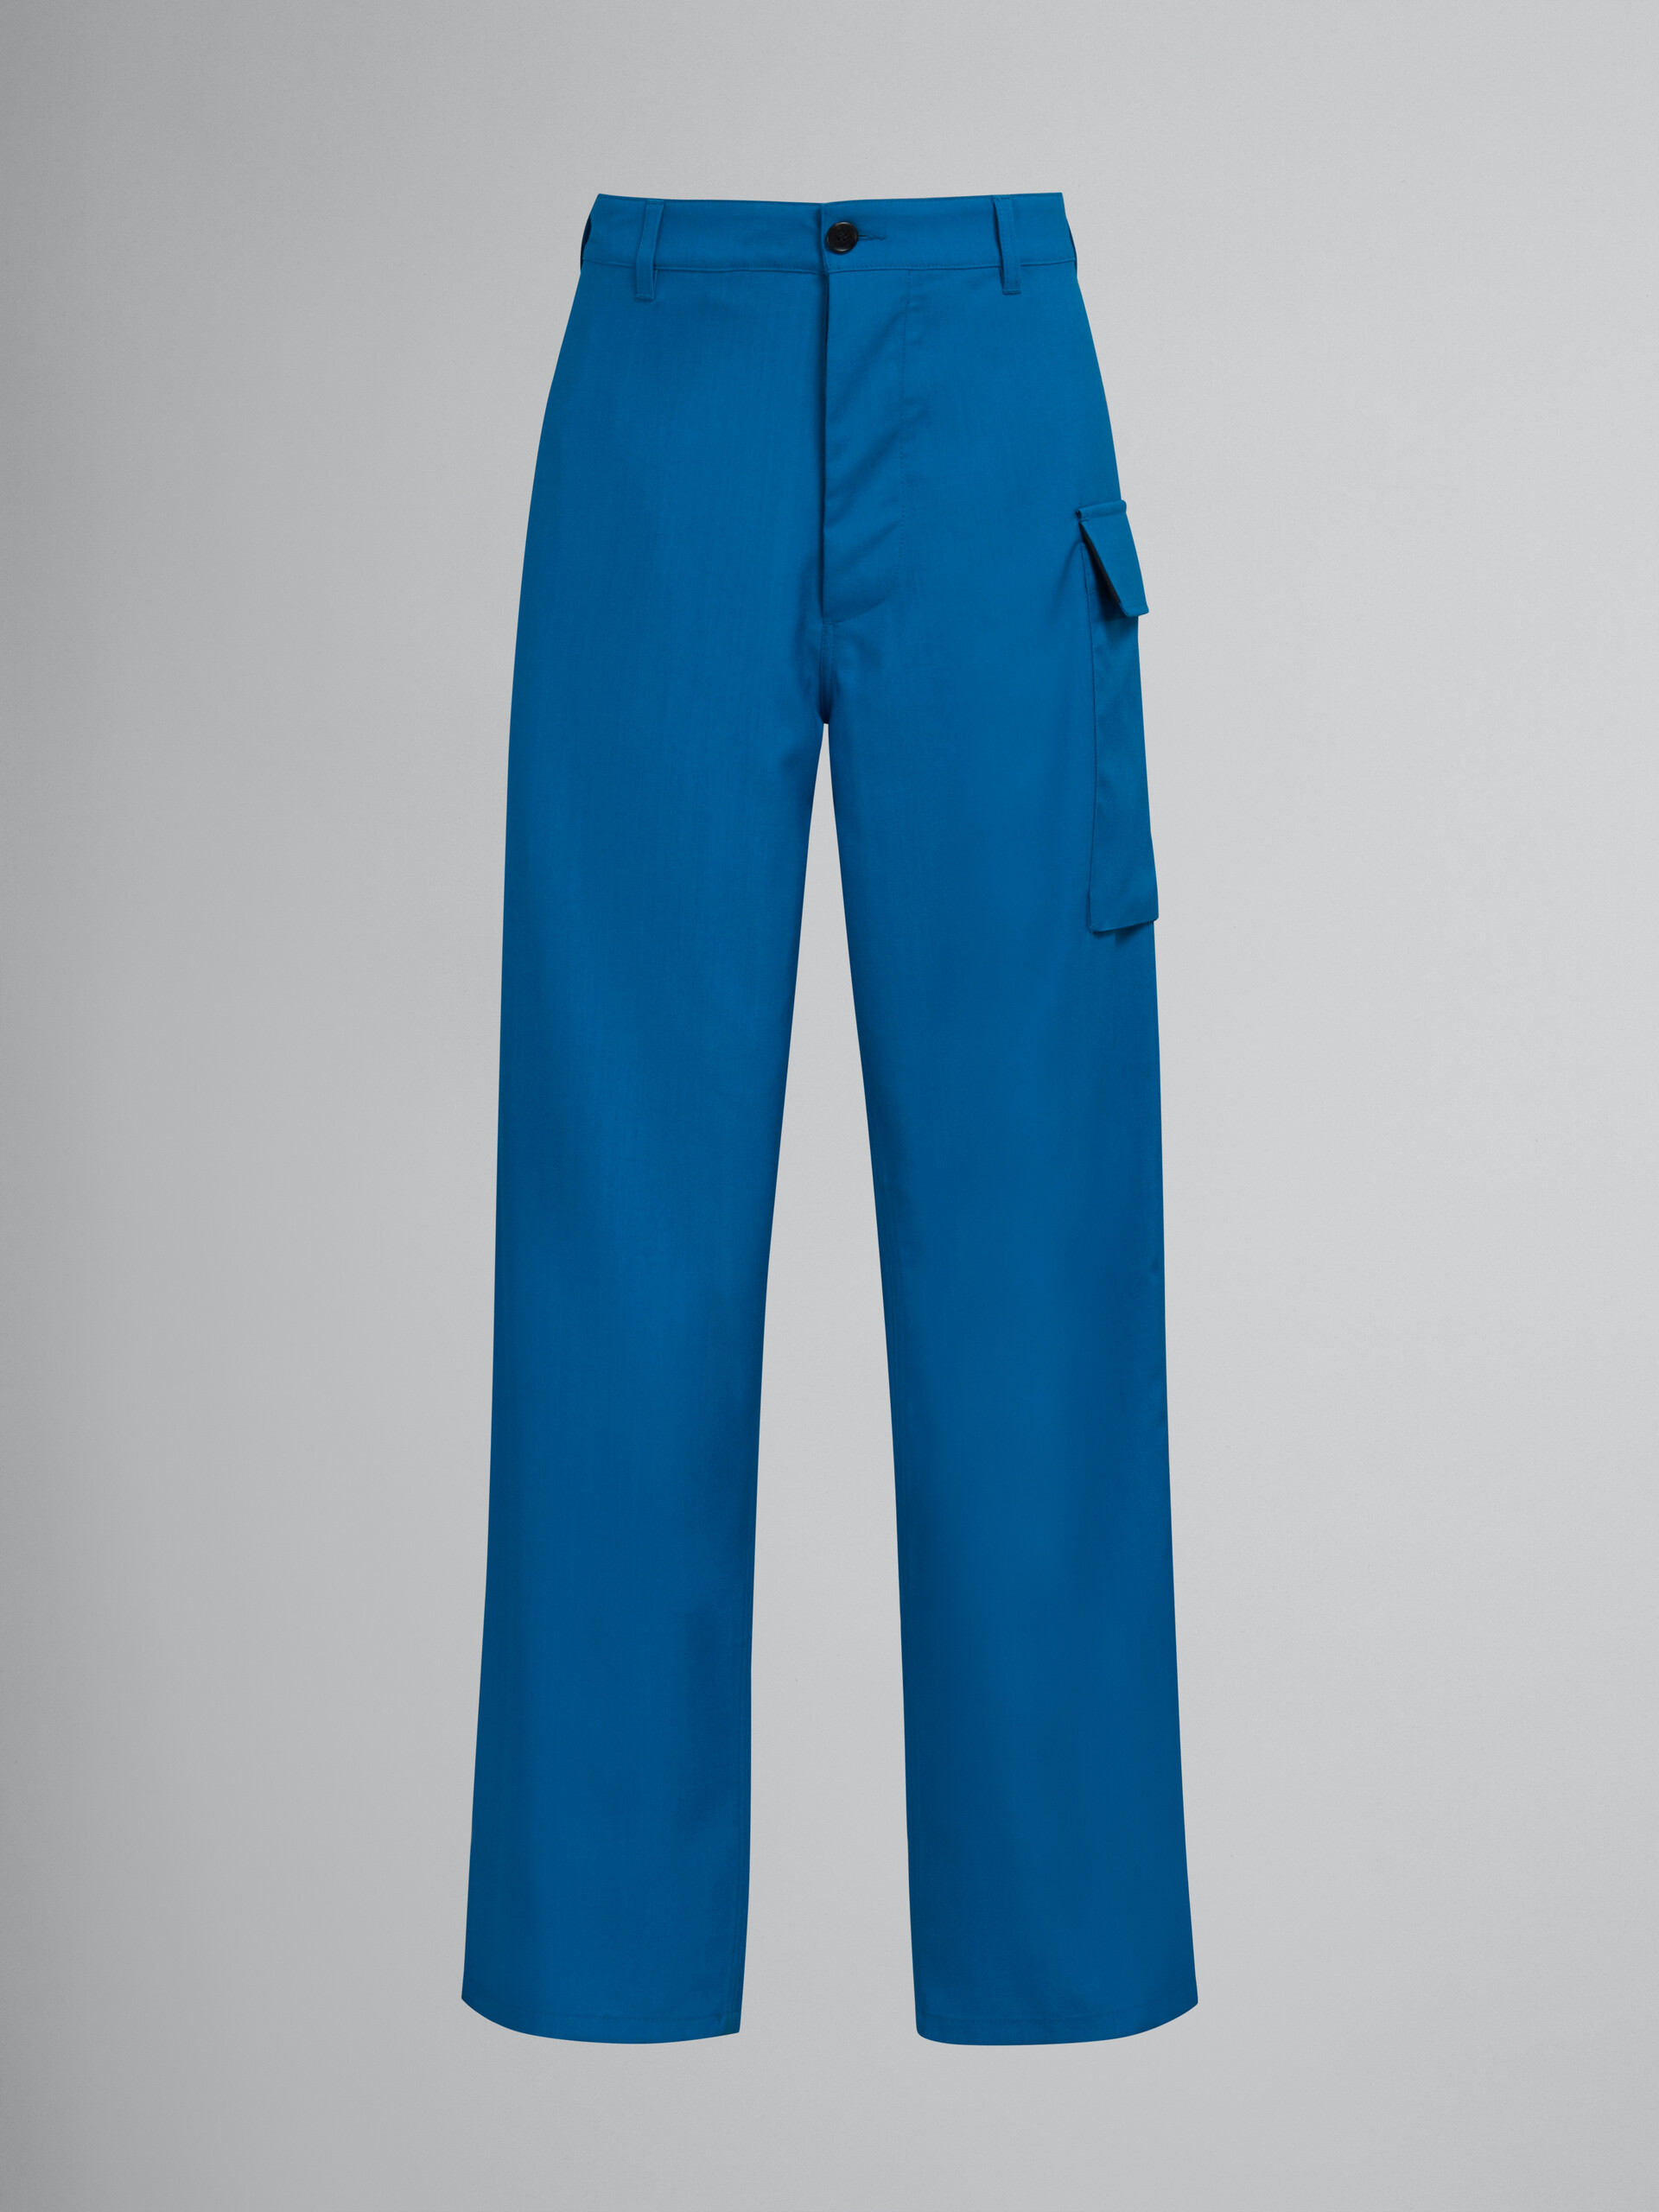 Pantalón de lana tropical verde azulado con bolsillo funcional - Pantalones - Image 1